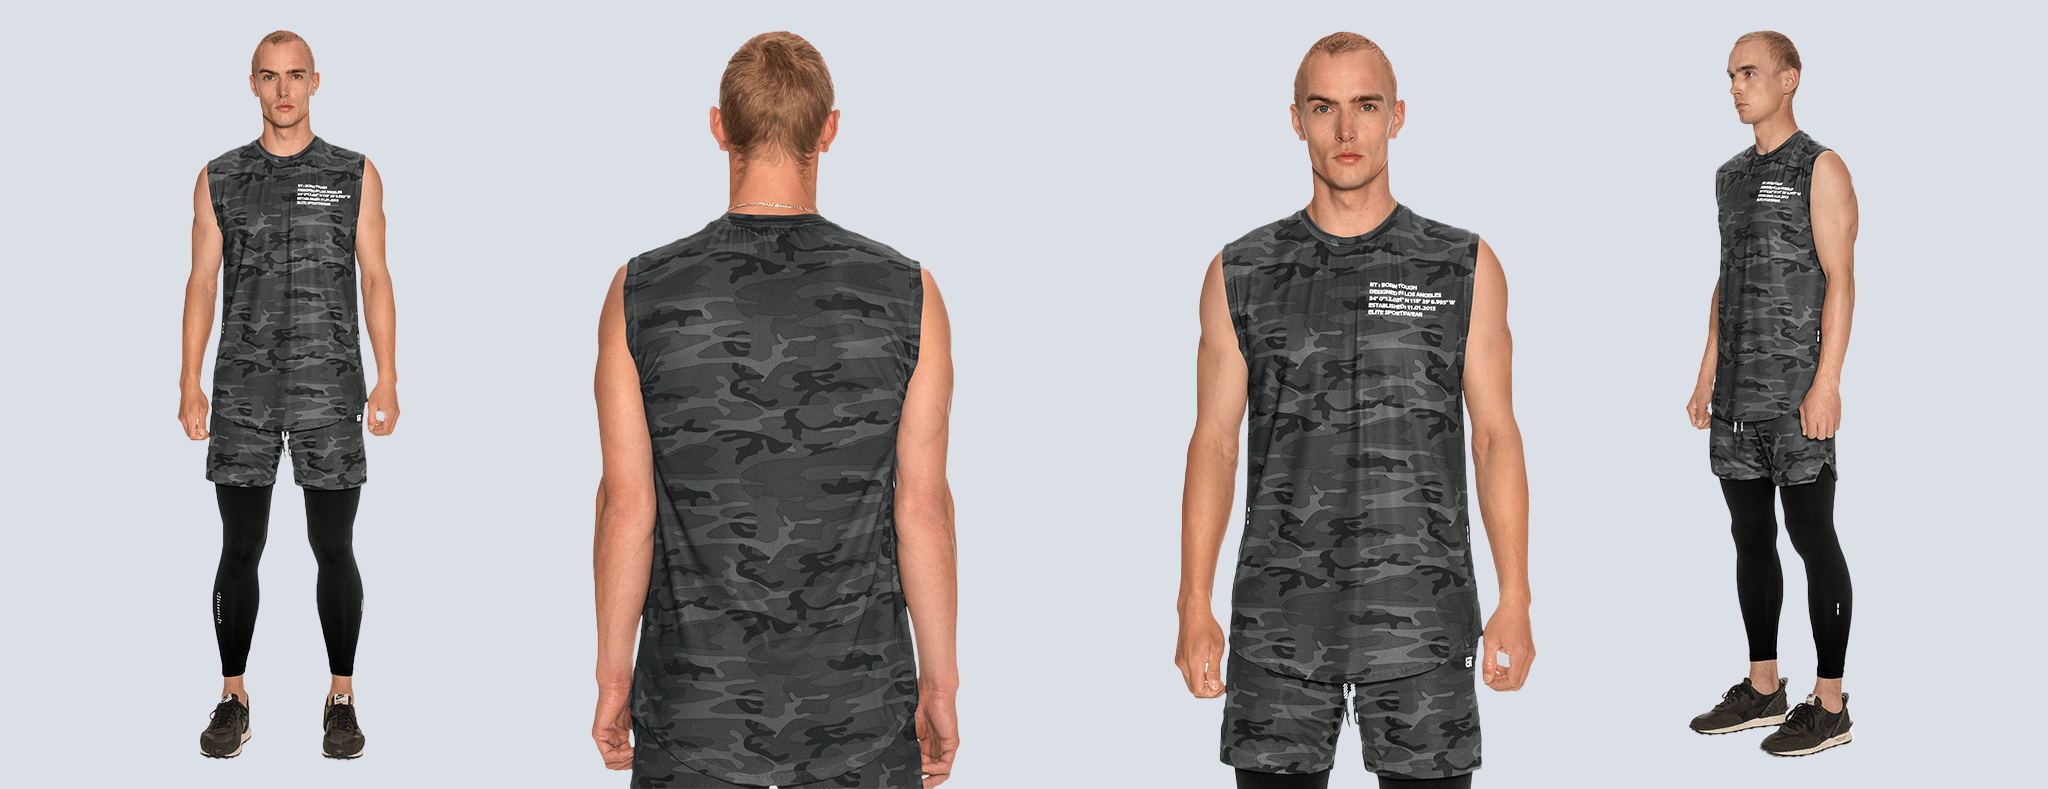 Air Pro Sleeveless Bodybuilding T shirt for Men